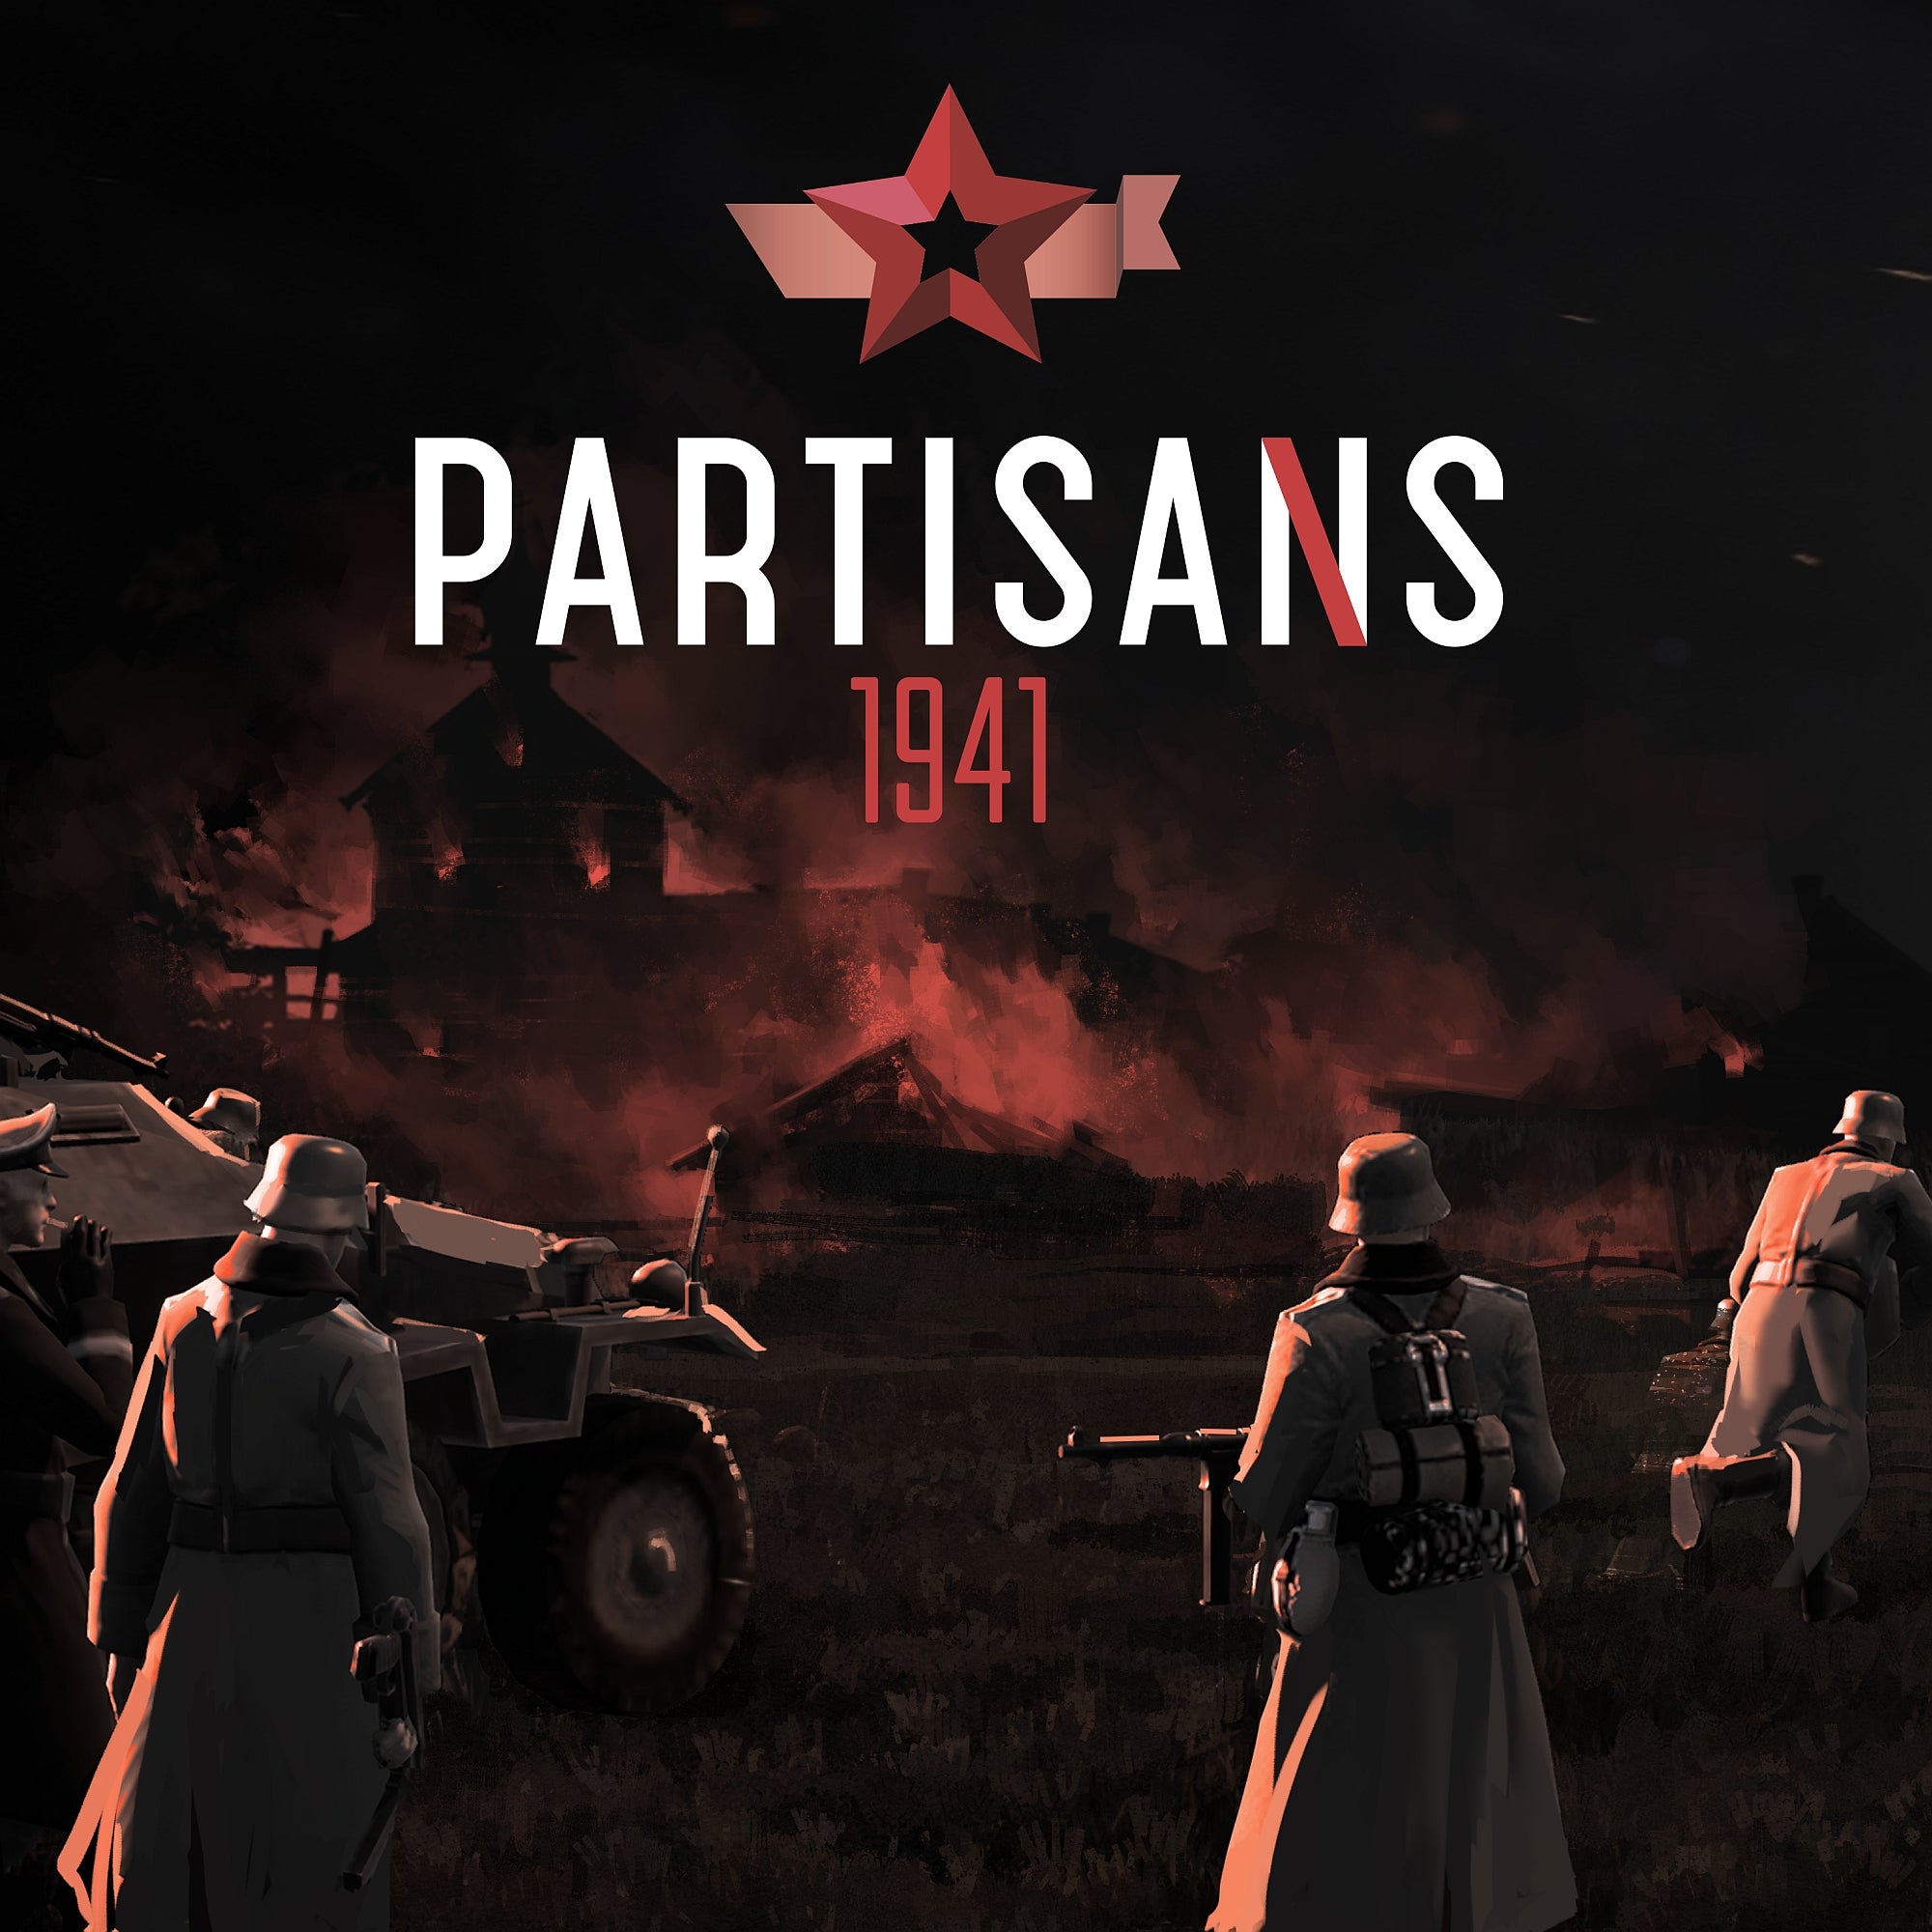 jaquette du jeu vidéo Partisans 1941